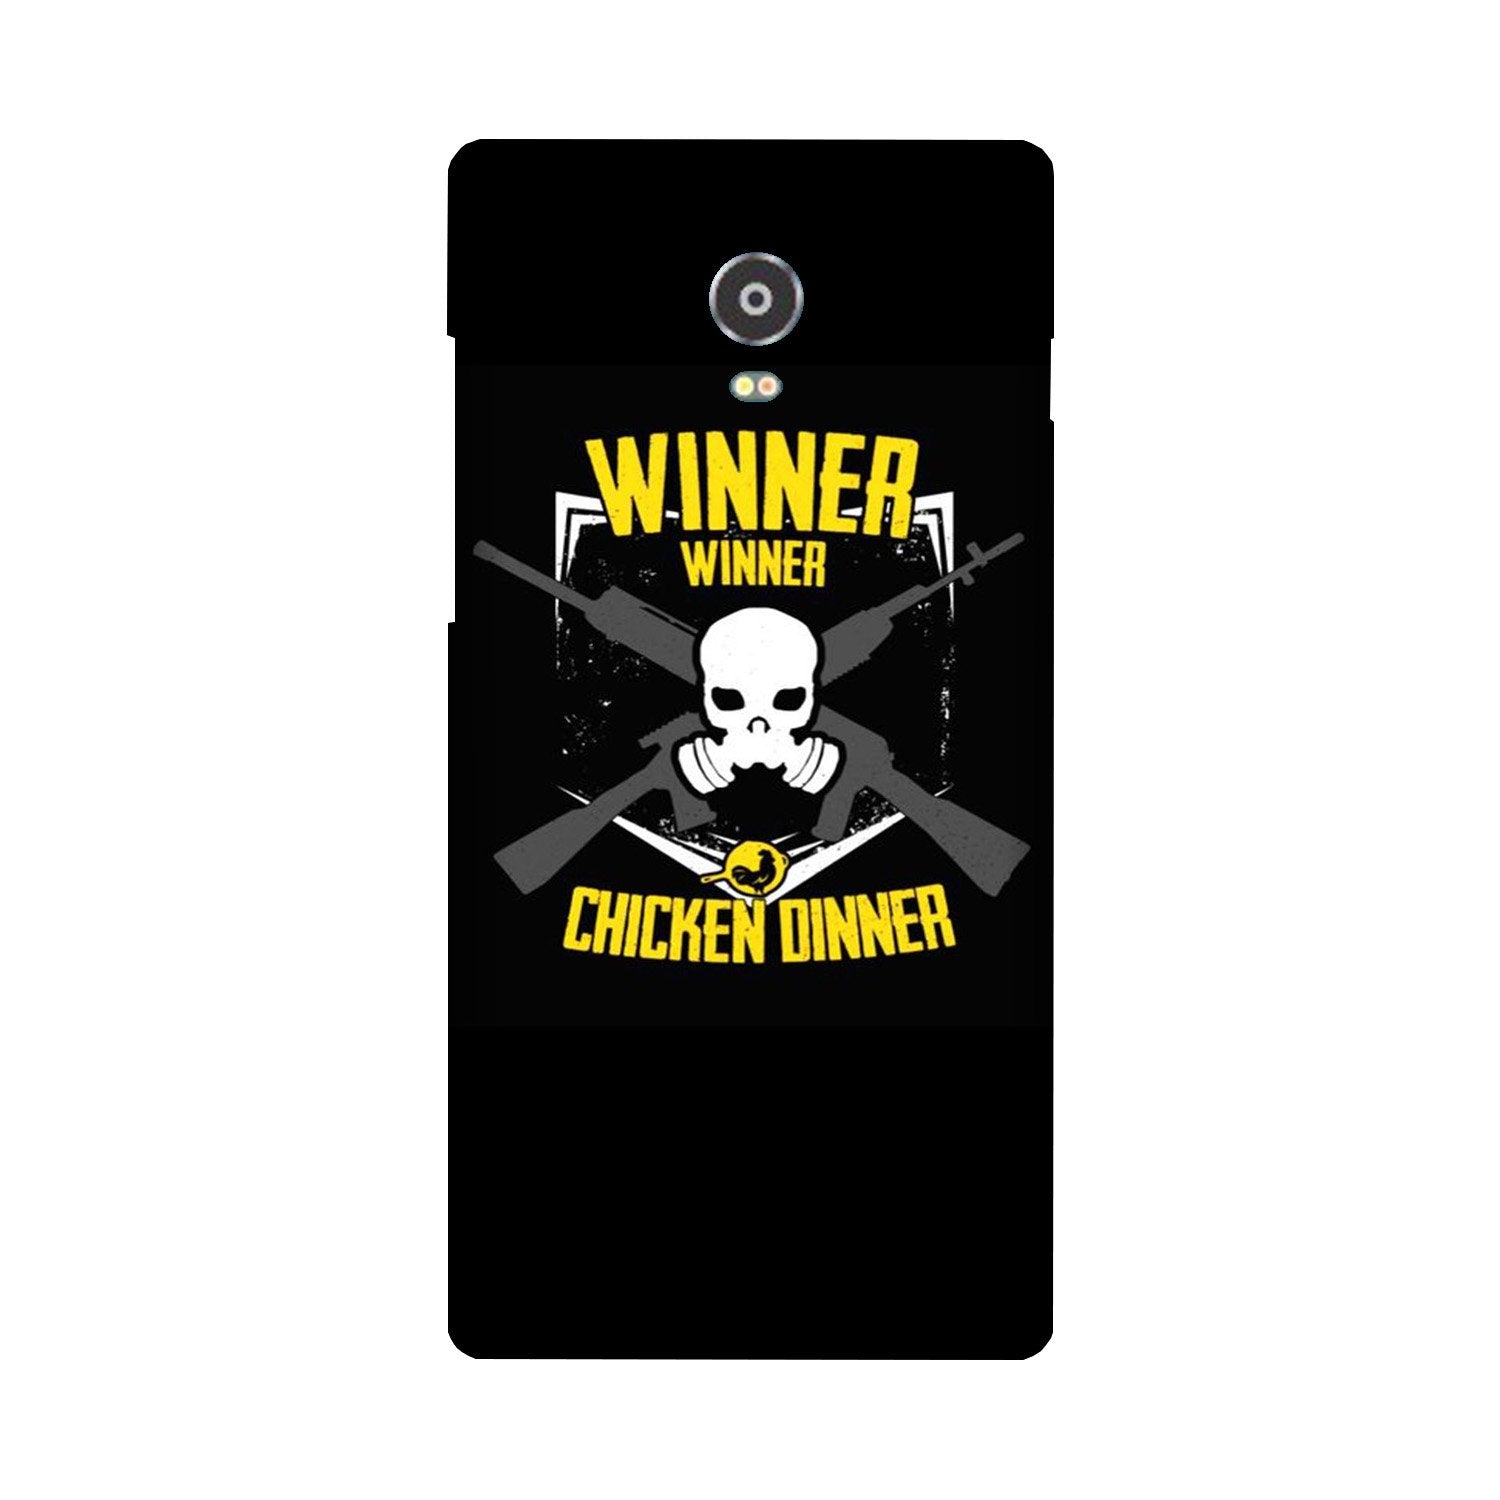 Winner Winner Chicken Dinner Case for Lenovo Vibe P1(Design - 178)